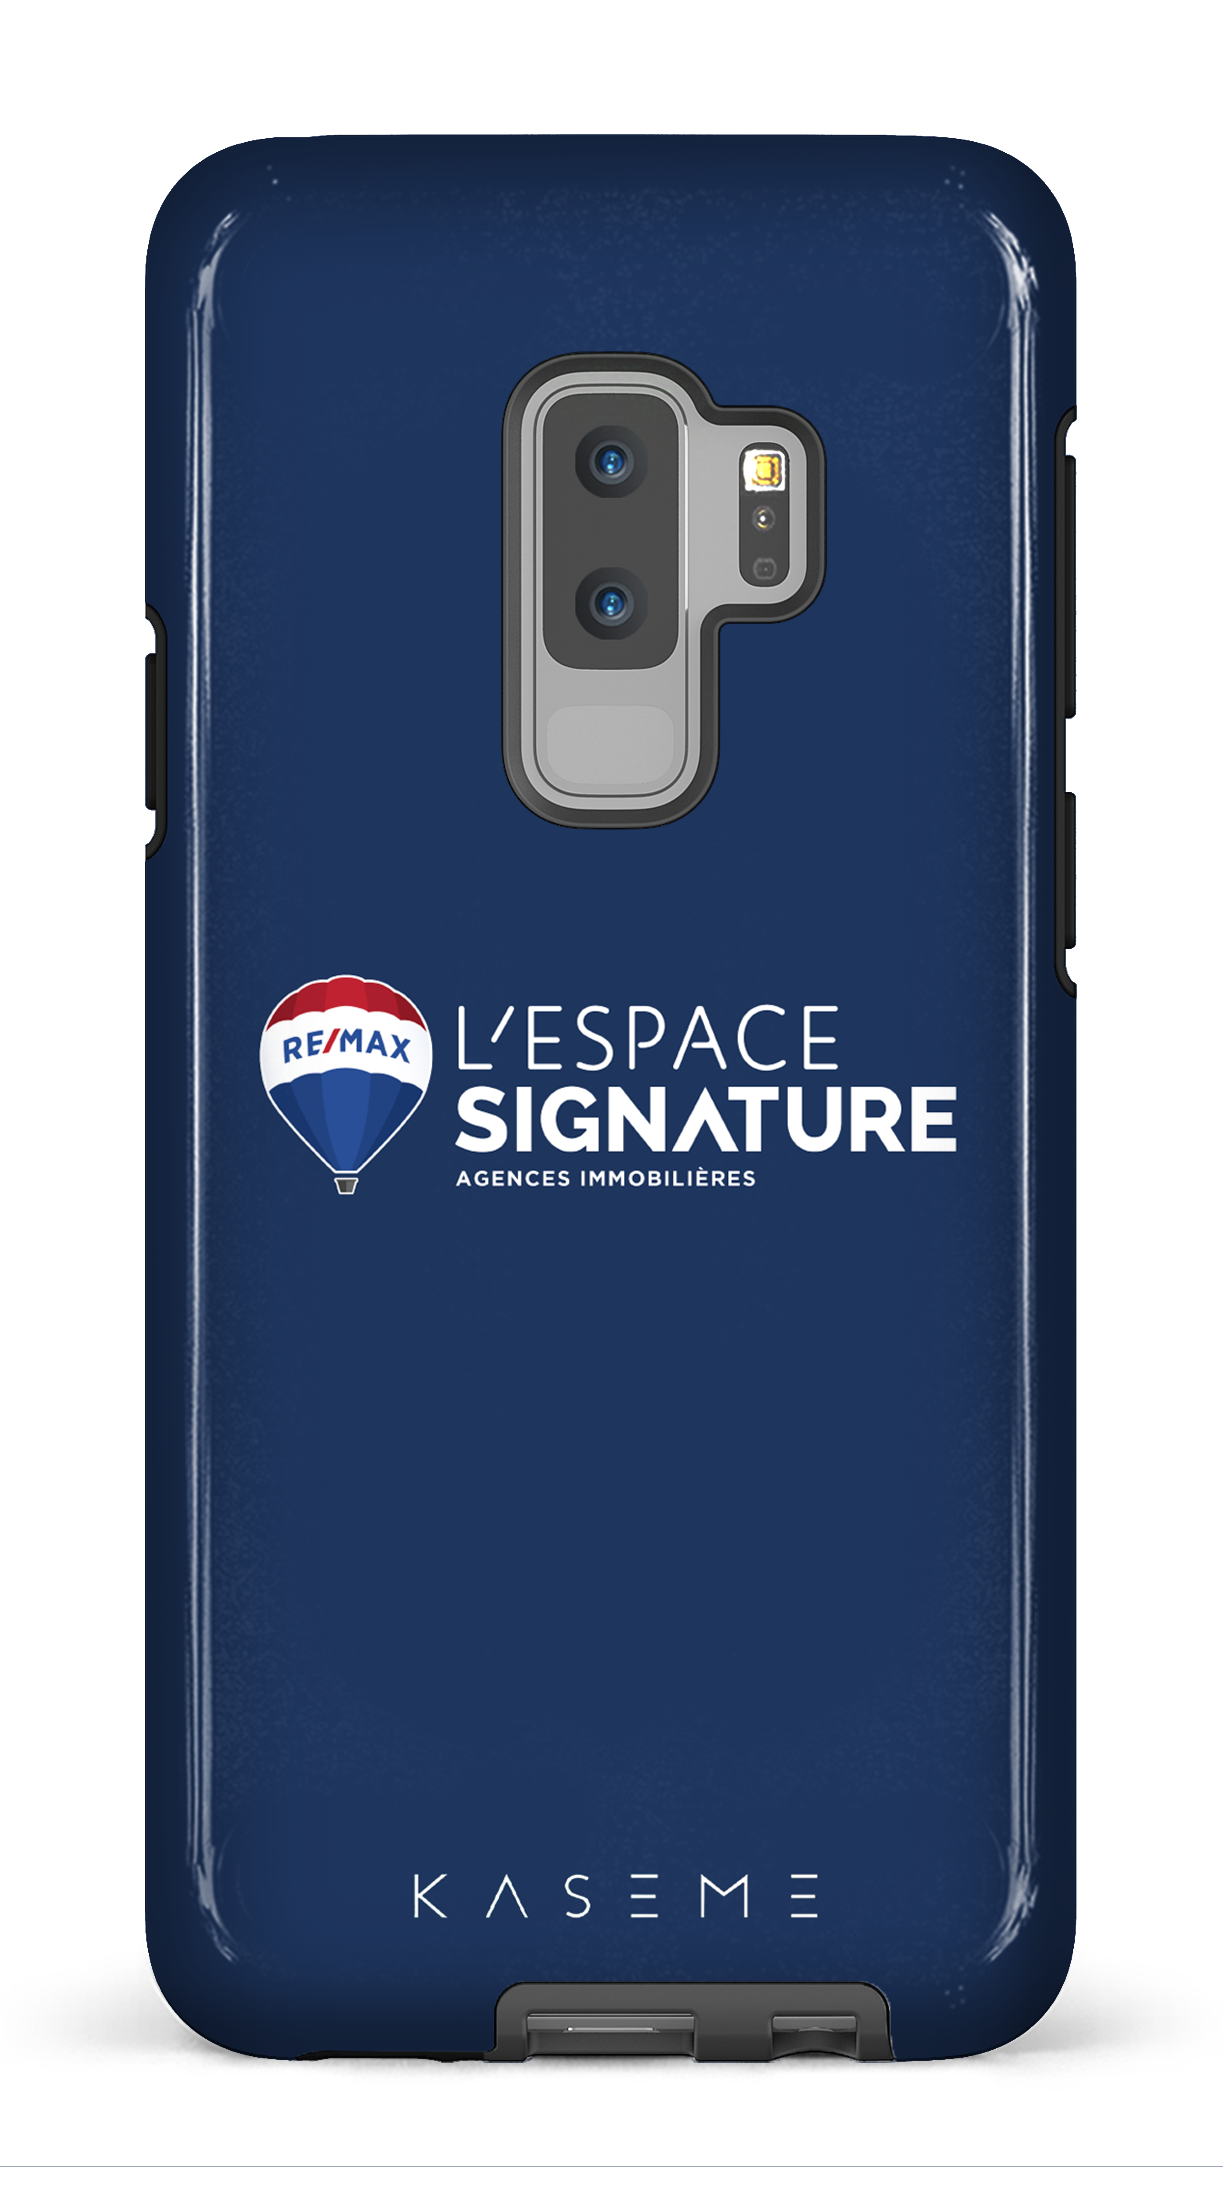 Remax Signature L'espace Bleu - Galaxy S9 Plus